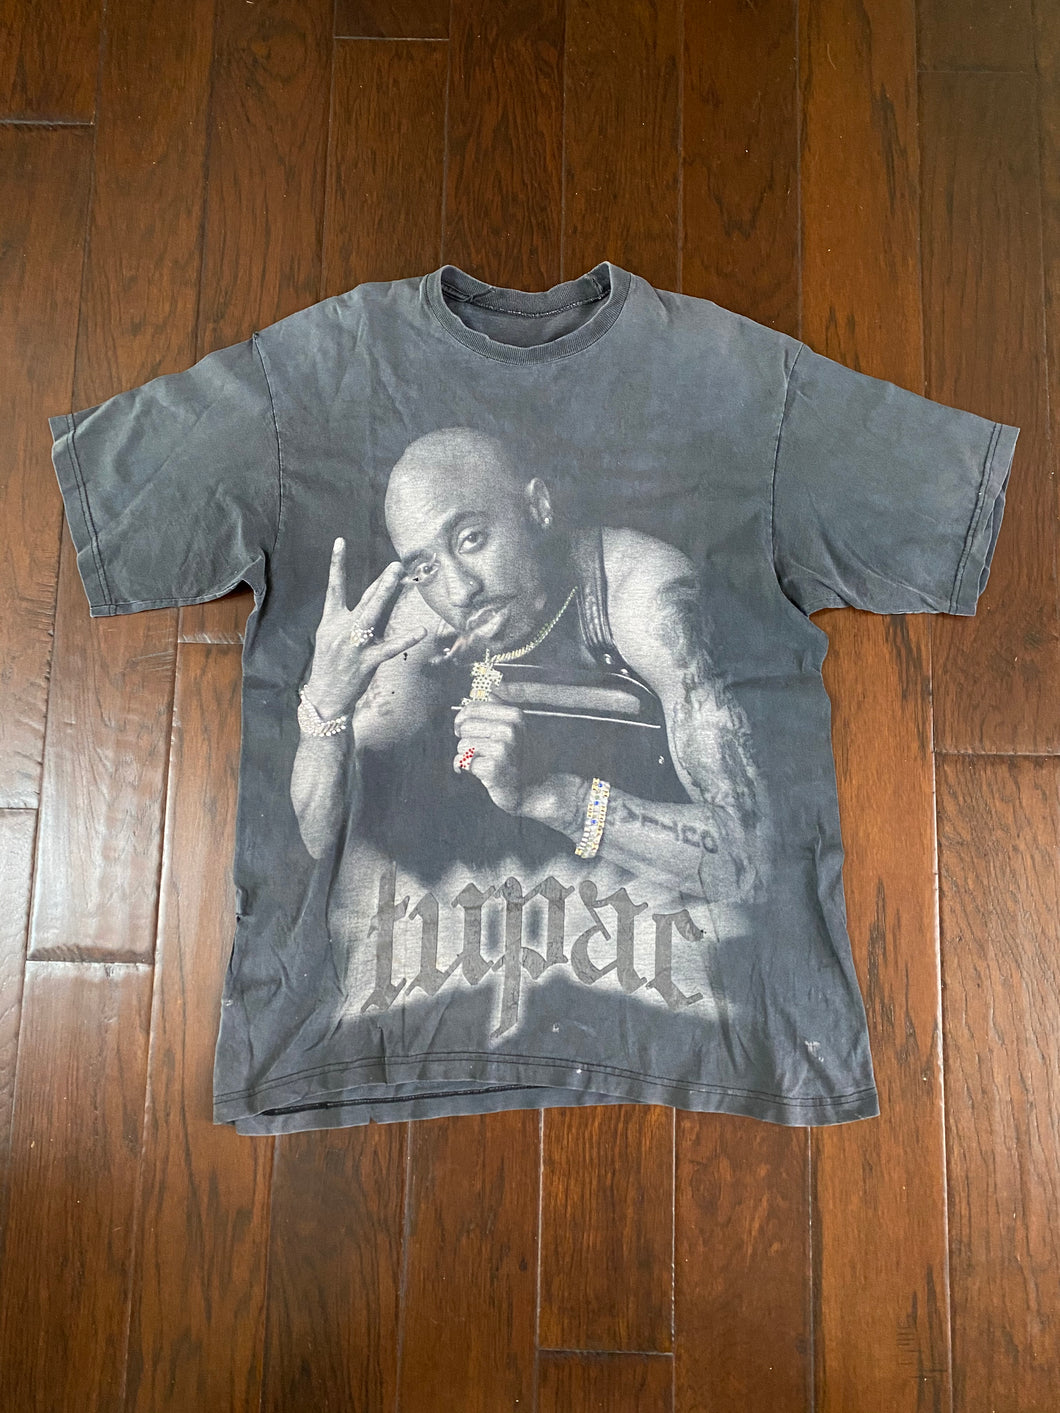 Tupac Shakur 2Pac 1990’s Vintage Distressed Rap T-shirt